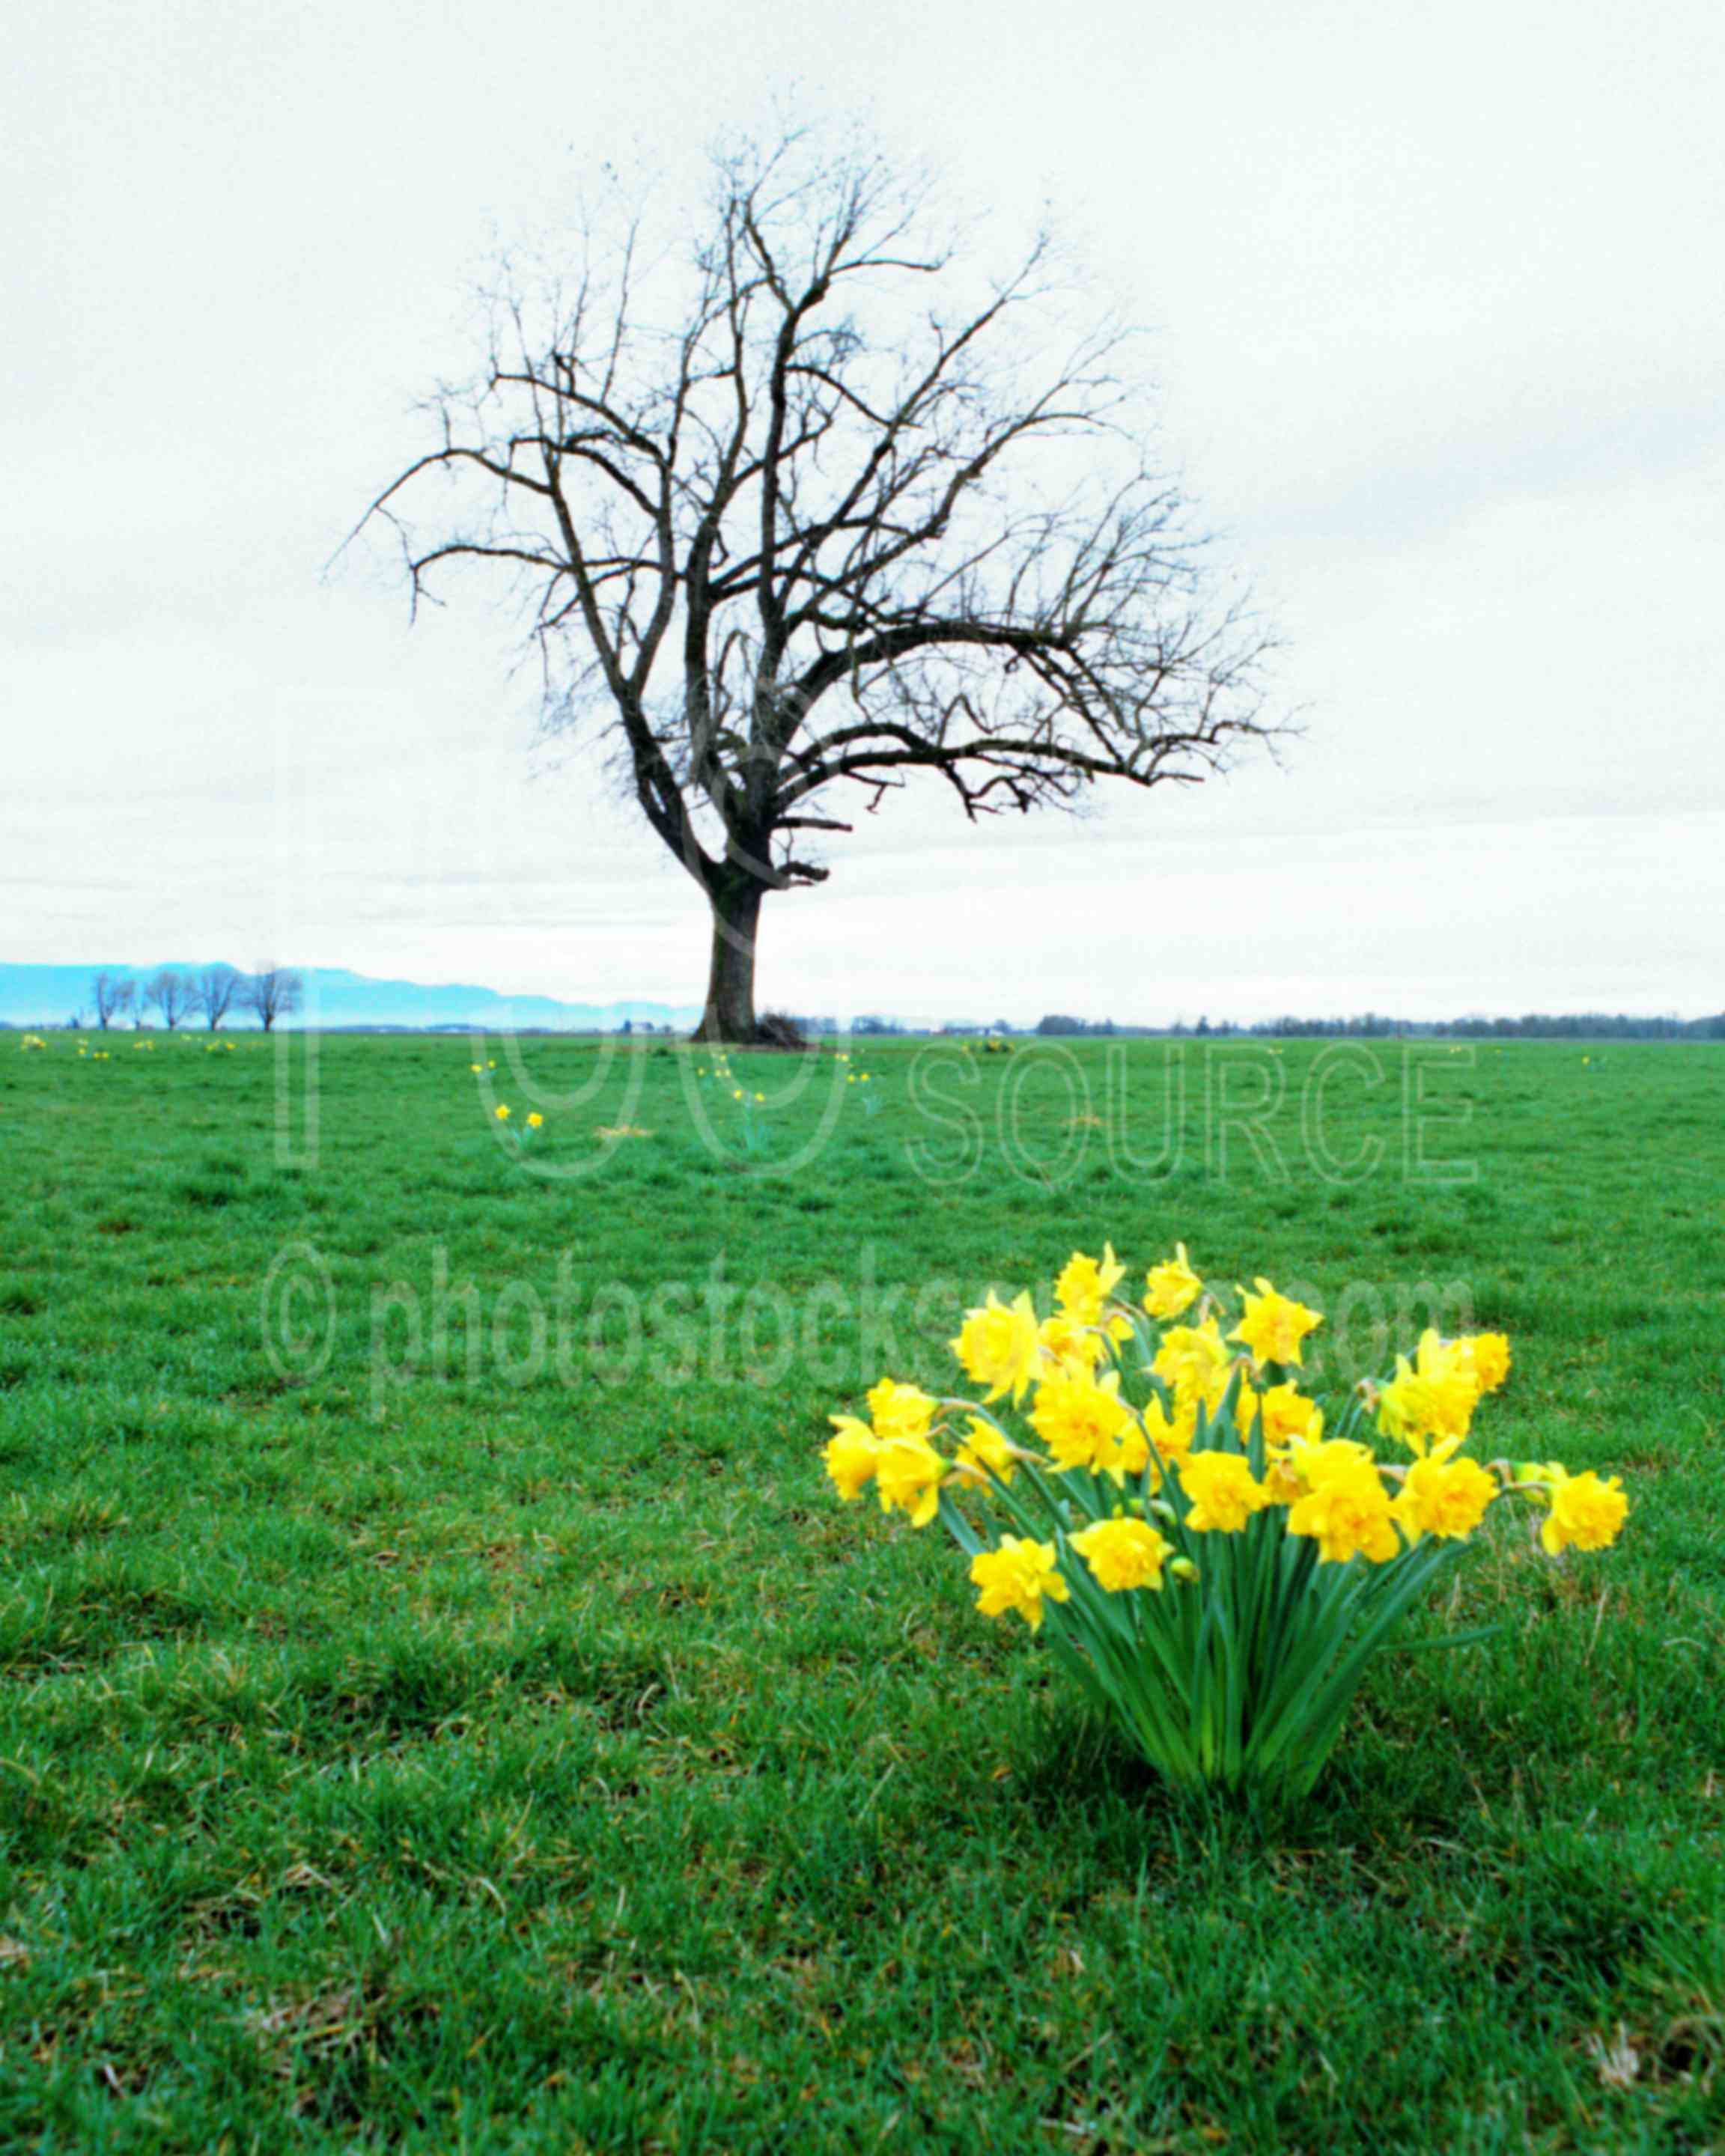 Tree and Daffodils,daffodil,usas,plants